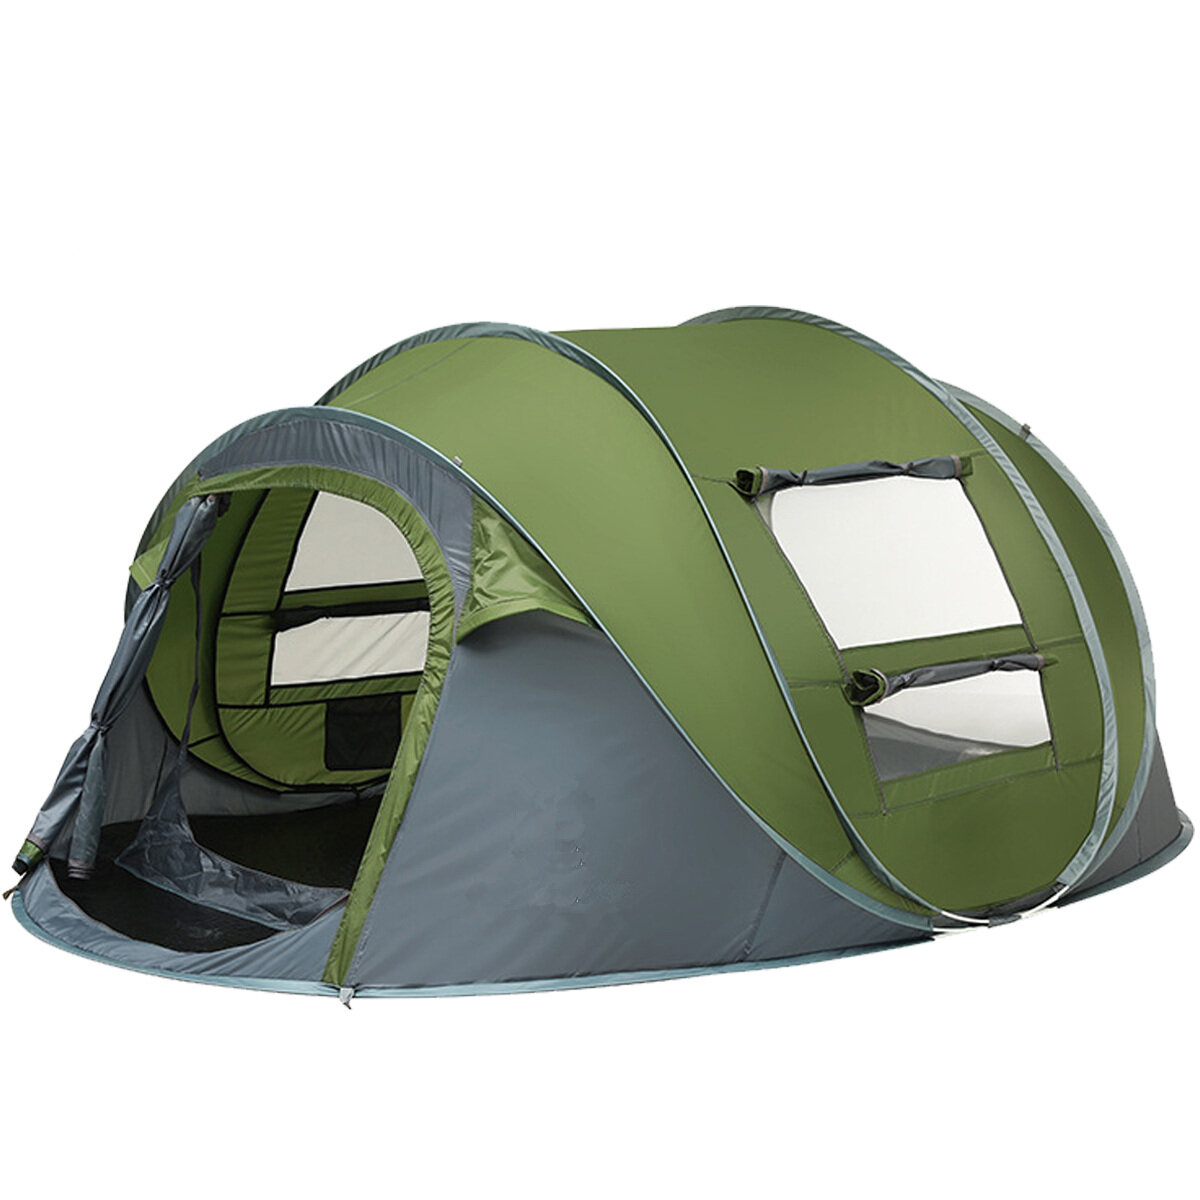 Tenda de camping para 3-4/5-8 pessoas com dupla porta, respirável, automática, impermeável, com toldo para proteger do sol, ideal para acampar, caminhar ou ir à praia.